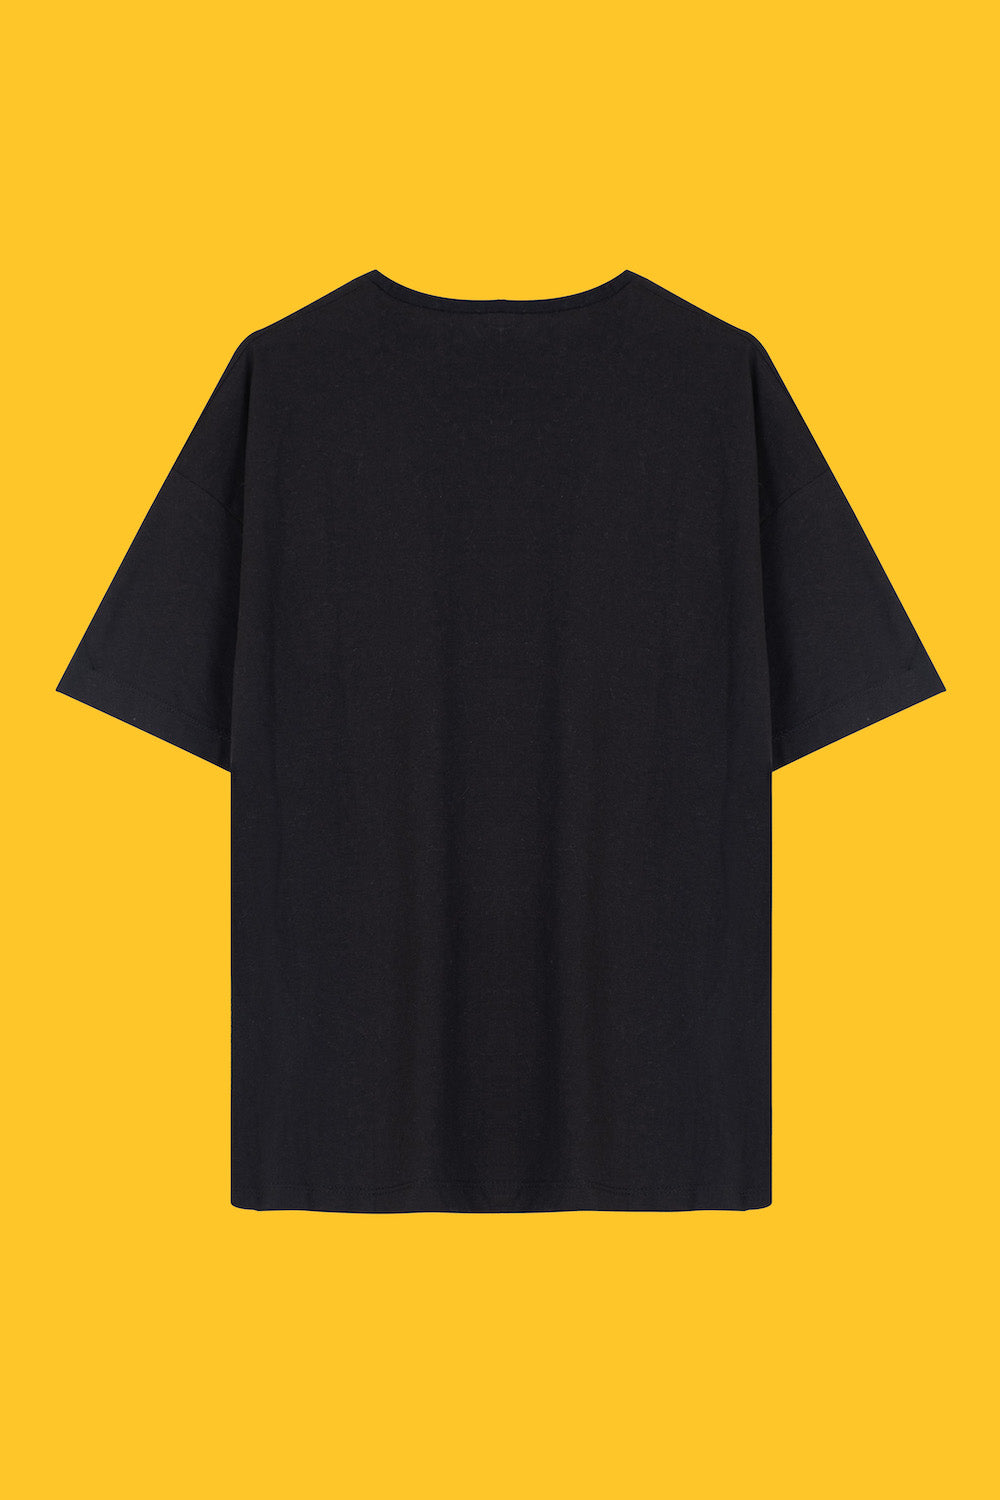 BlackScreen Unisex T-Shirt